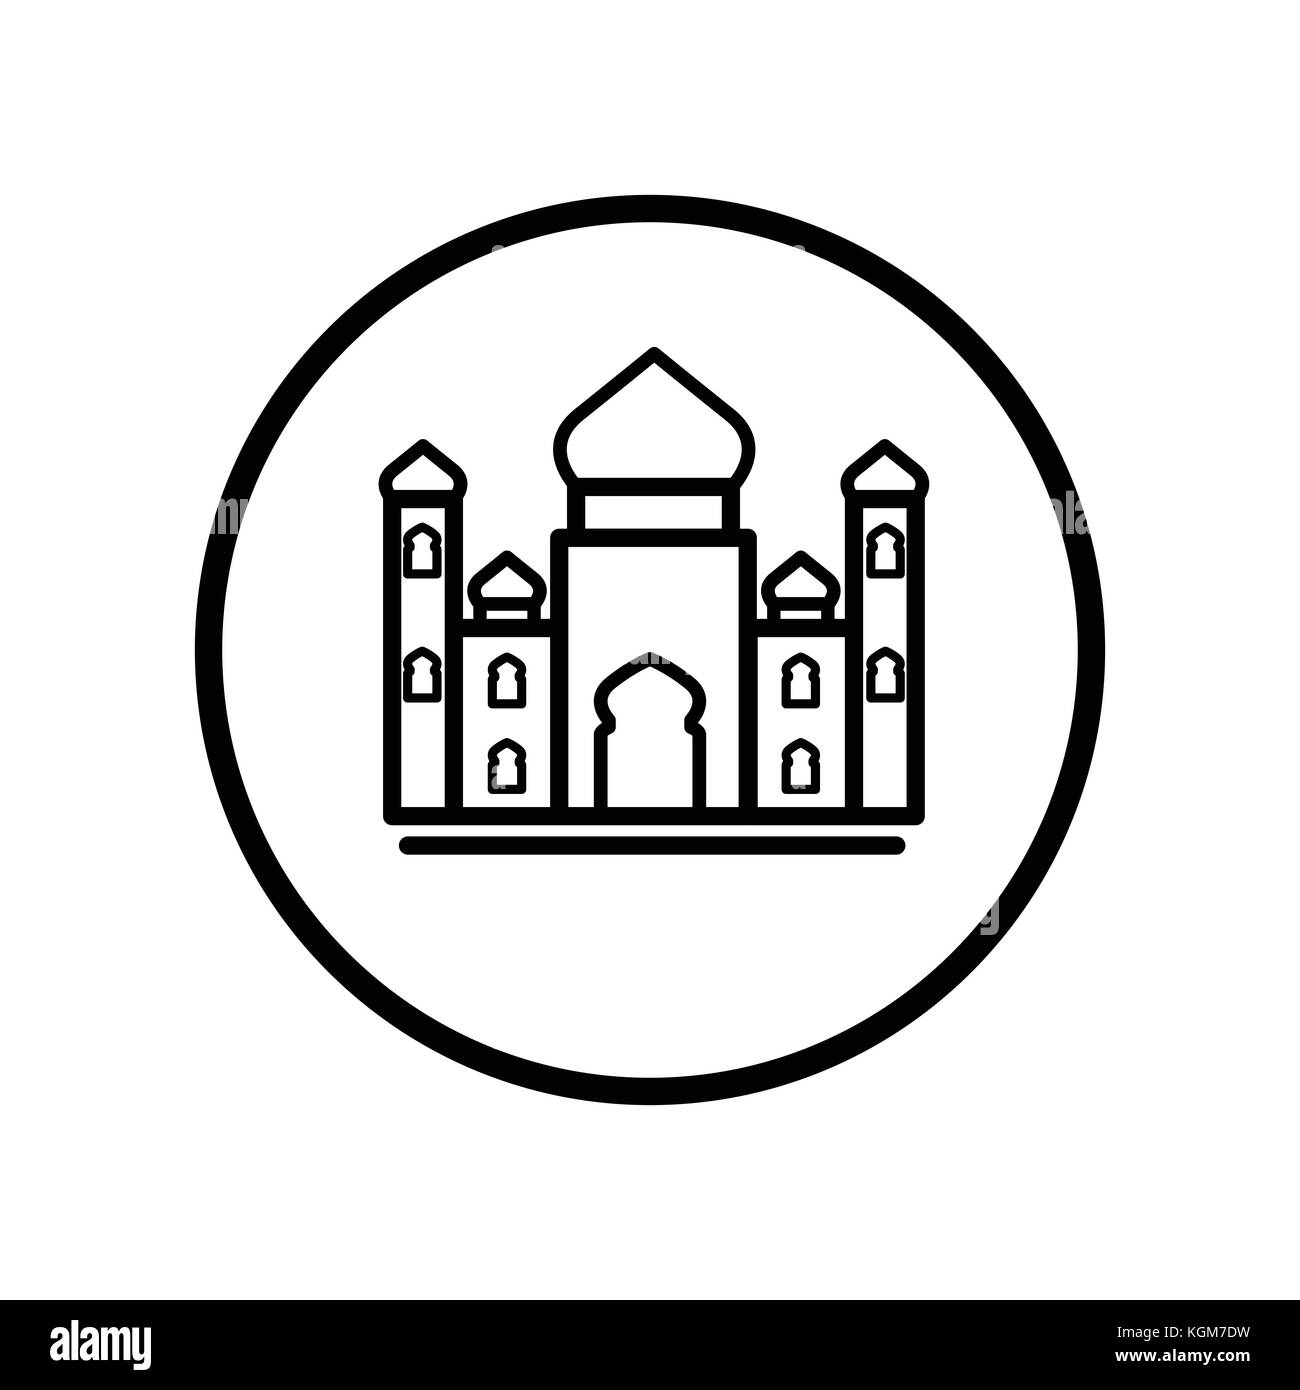 Icona islamica, la moschea icona nella linea Circle, simbolo iconico all'interno di un cerchio su sfondo bianco, per segno islamico concetto. vettore design iconico. Illustrazione Vettoriale